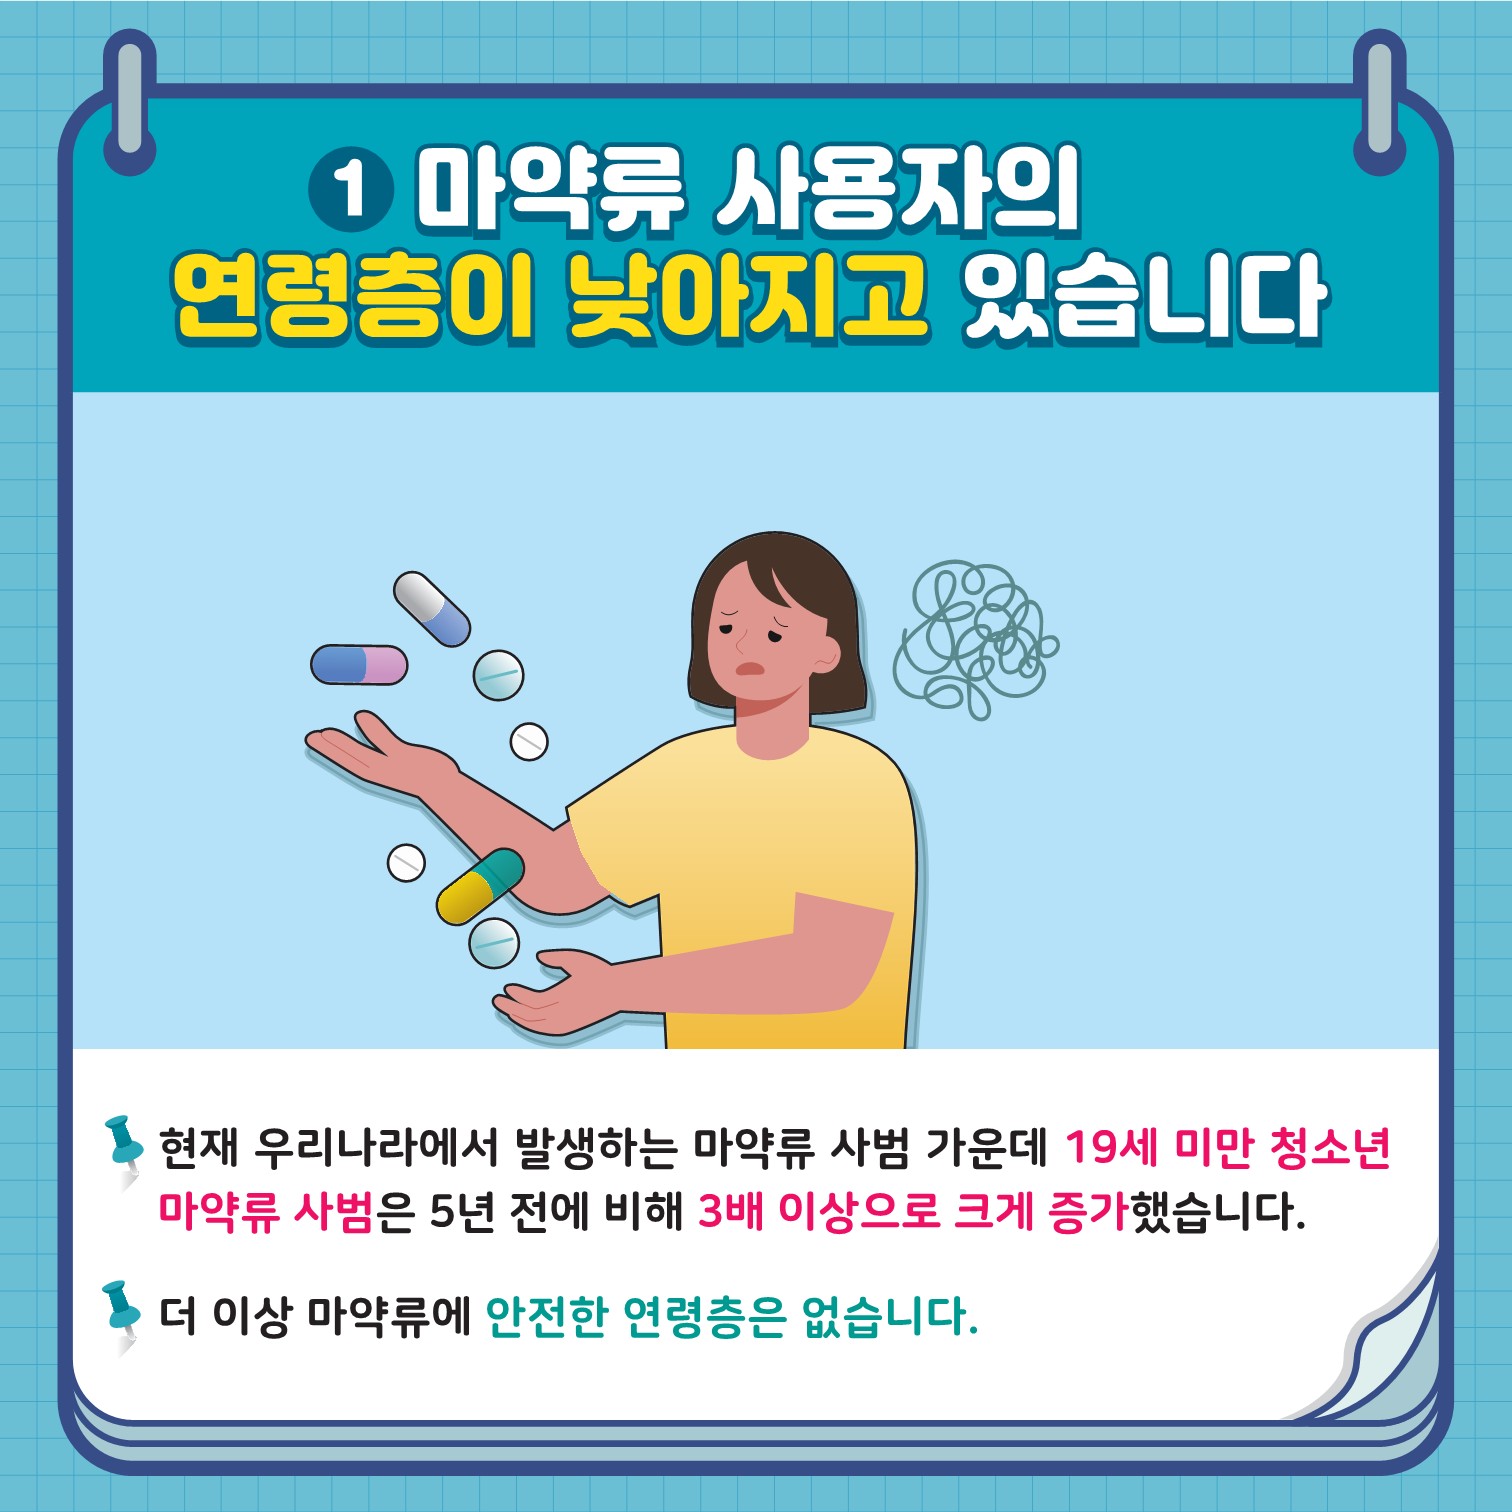 [붙임] 학생 마약류 예방 카드뉴스 1호-복사_2